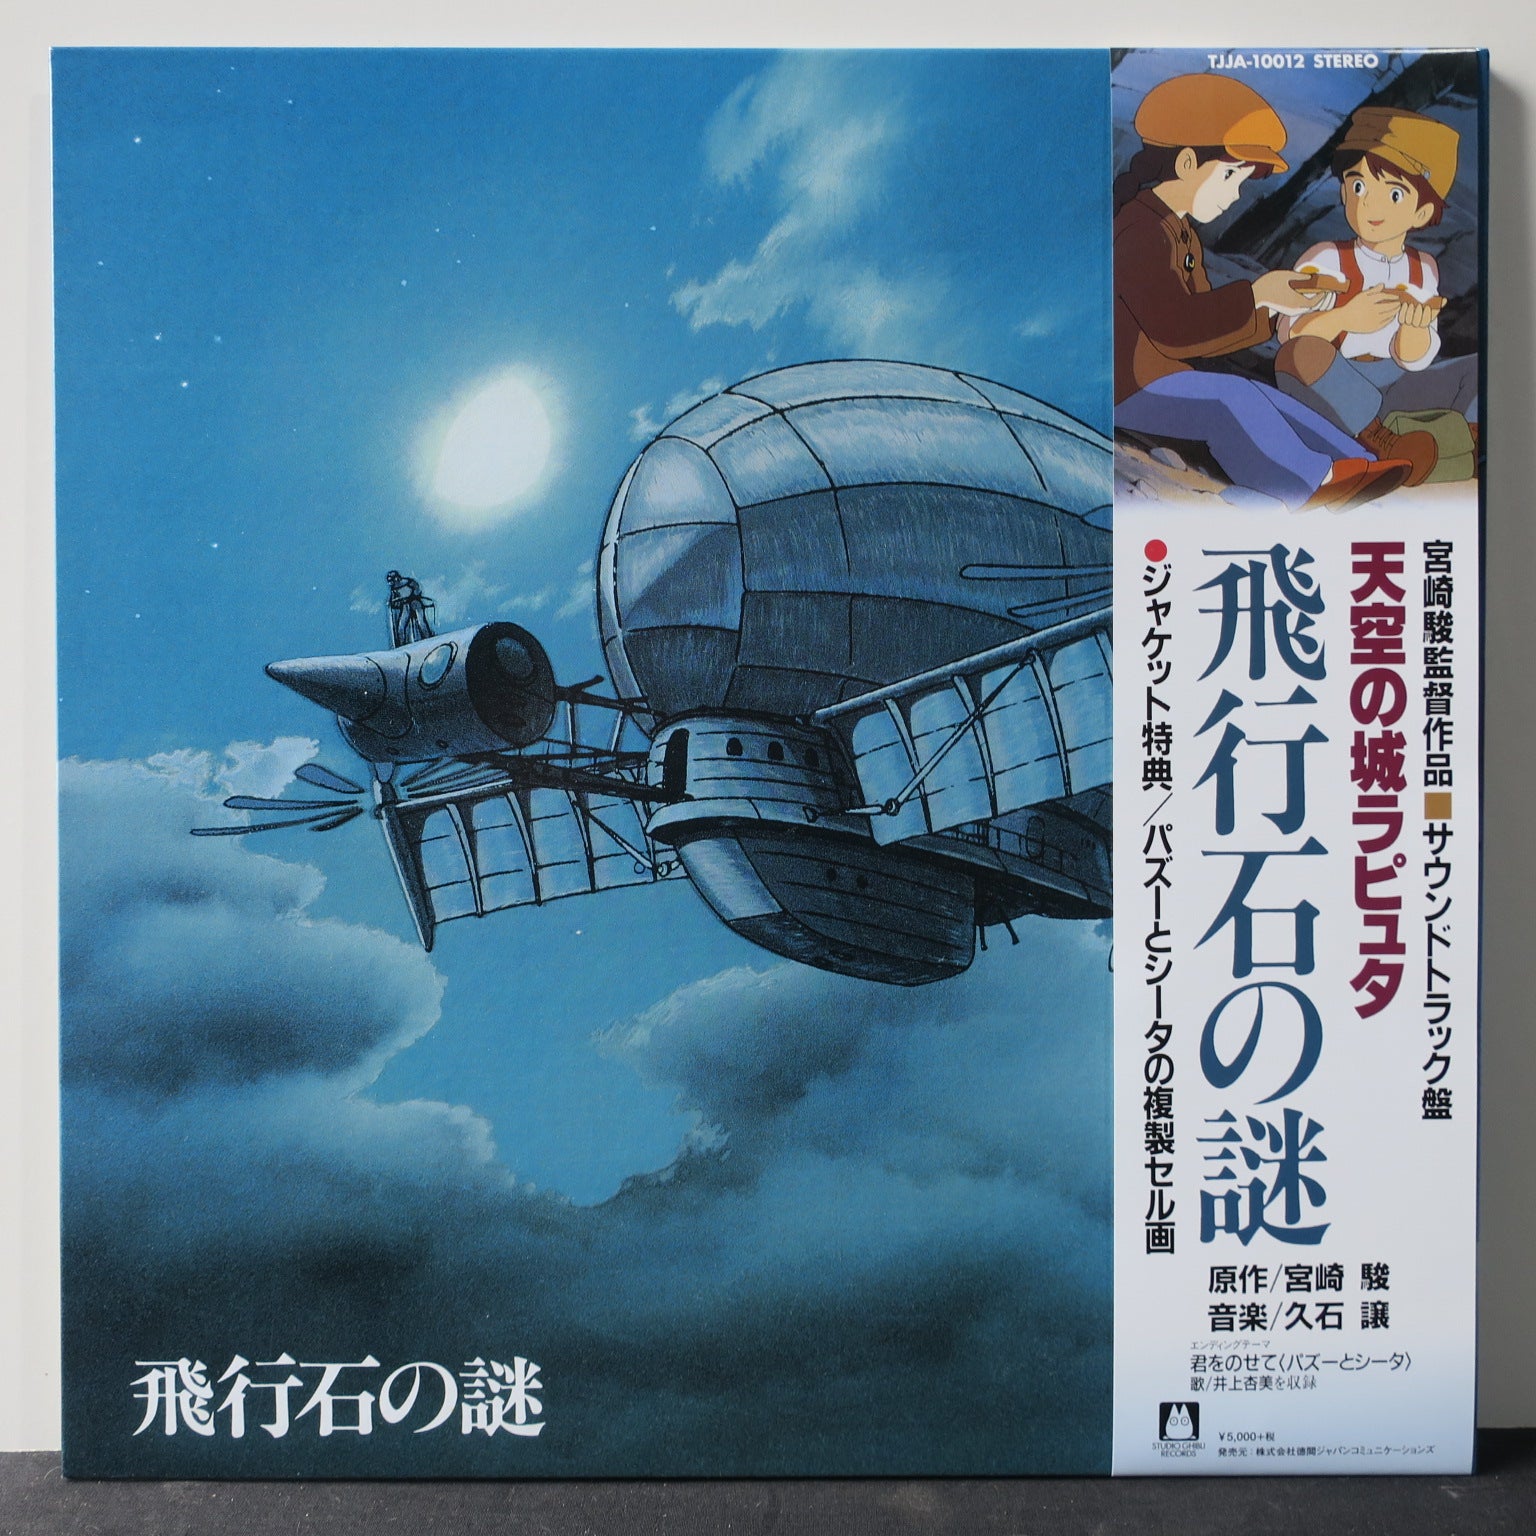 LAPUTA: CASTLE IN THE SKY' Studio Ghibli Soundtrack Vinyl LP | GOLDMINE  RECORDS